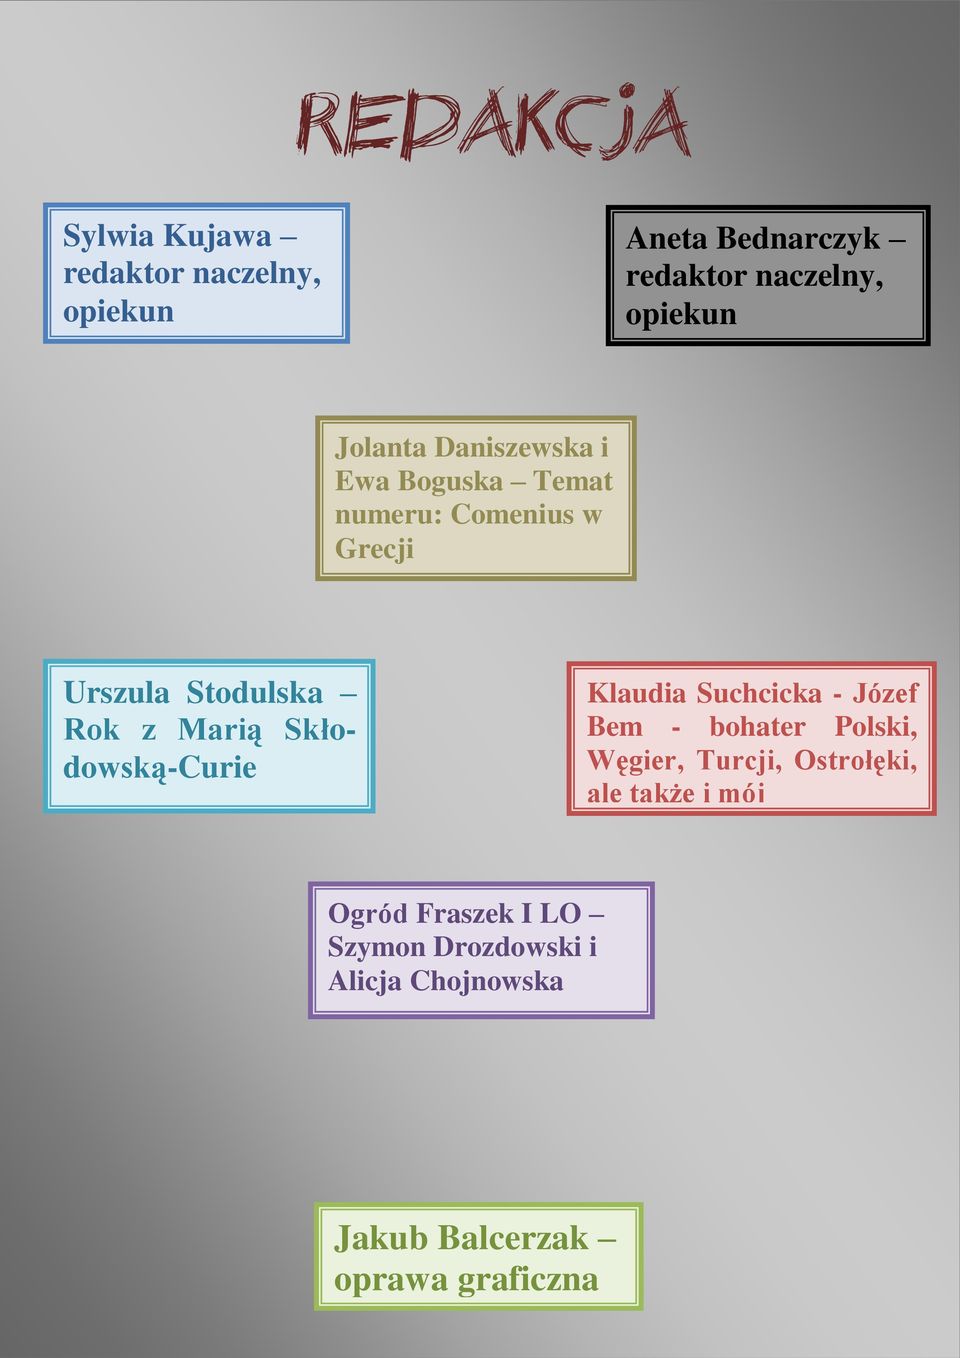 Skłodowską-Curie Klaudia Suchcicka - Józef Bem - bohater Polski, Węgier, Turcji, Ostrołęki, ale